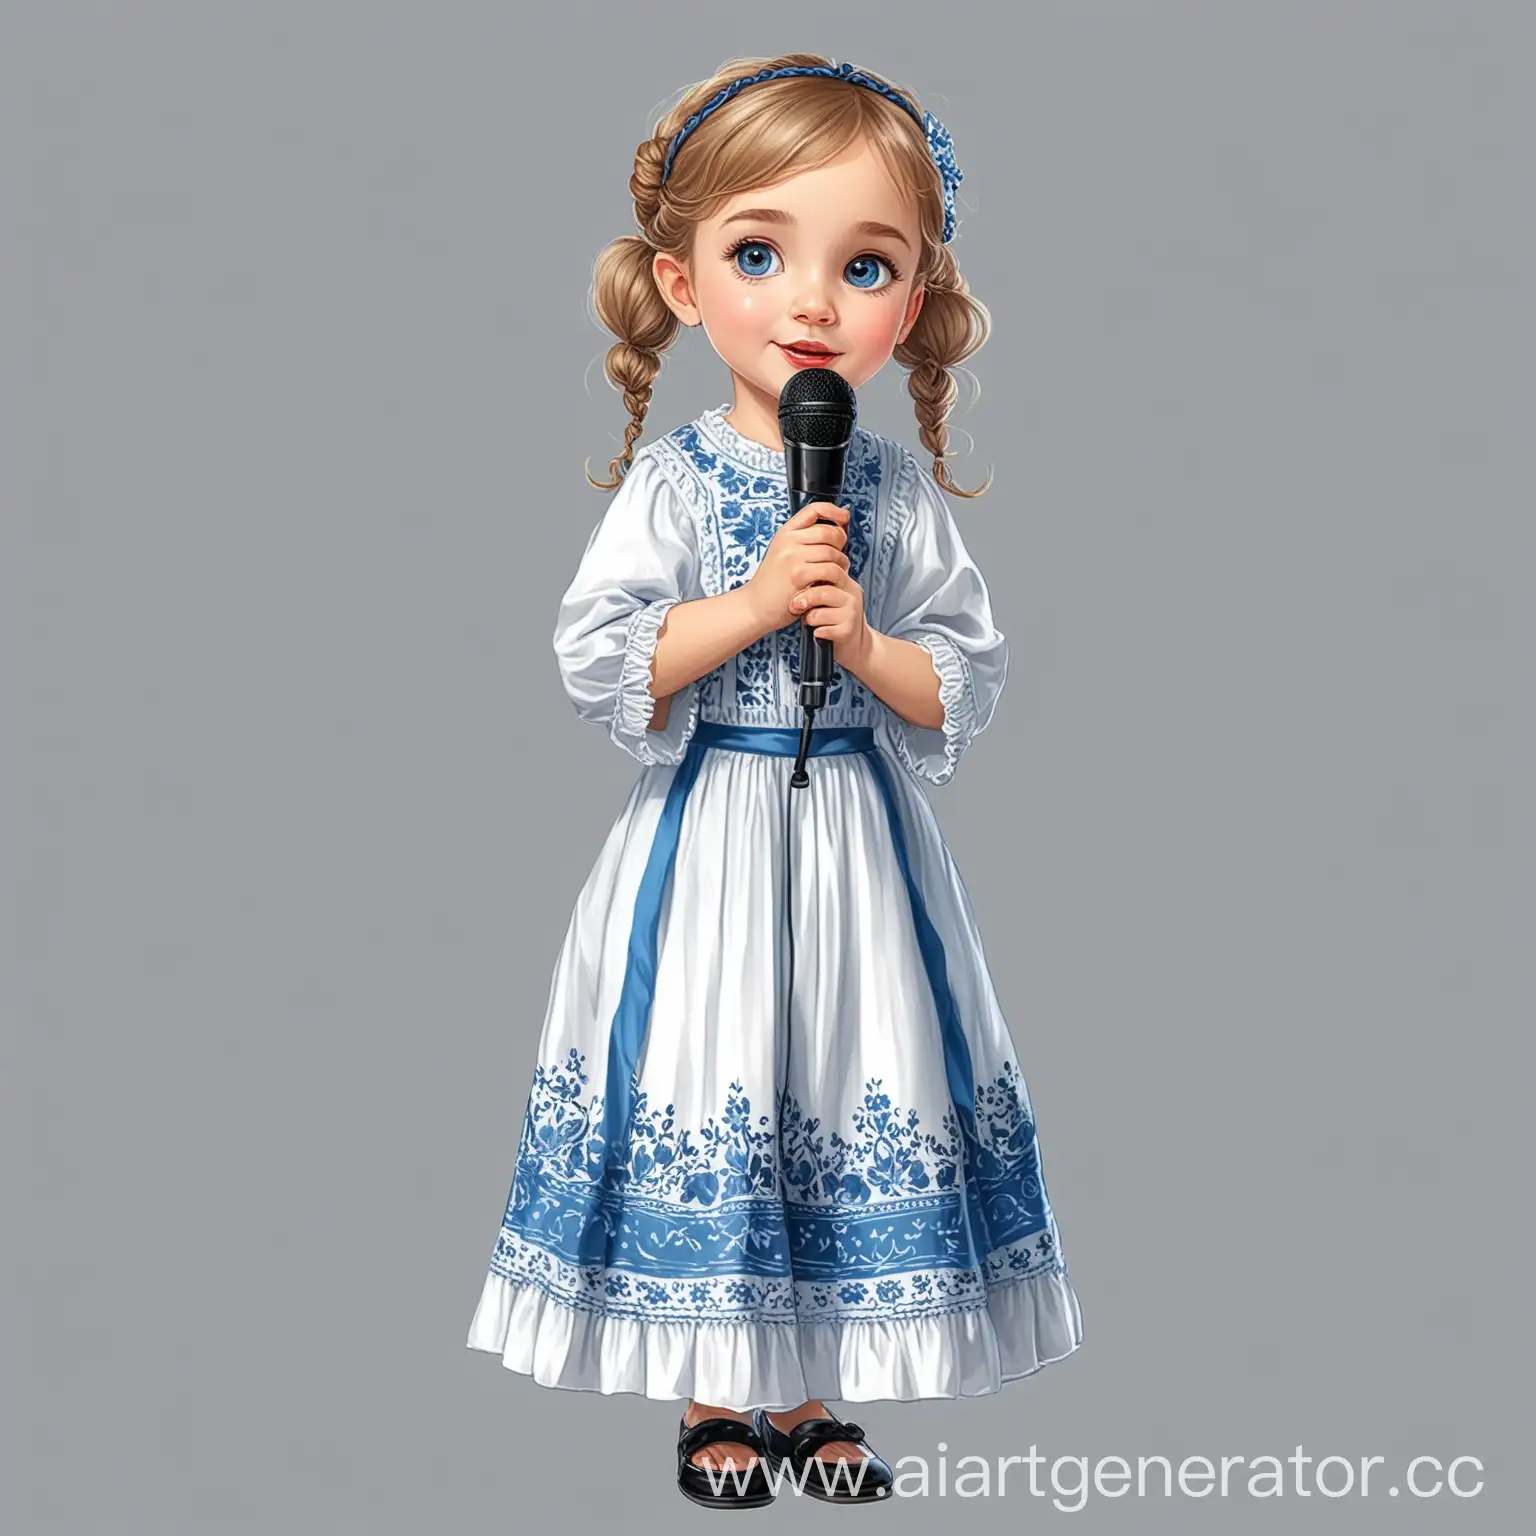 клип арт мультяшная девочка ребёнок певица с микрофоном в белорусской одежде белое платье с синим узором